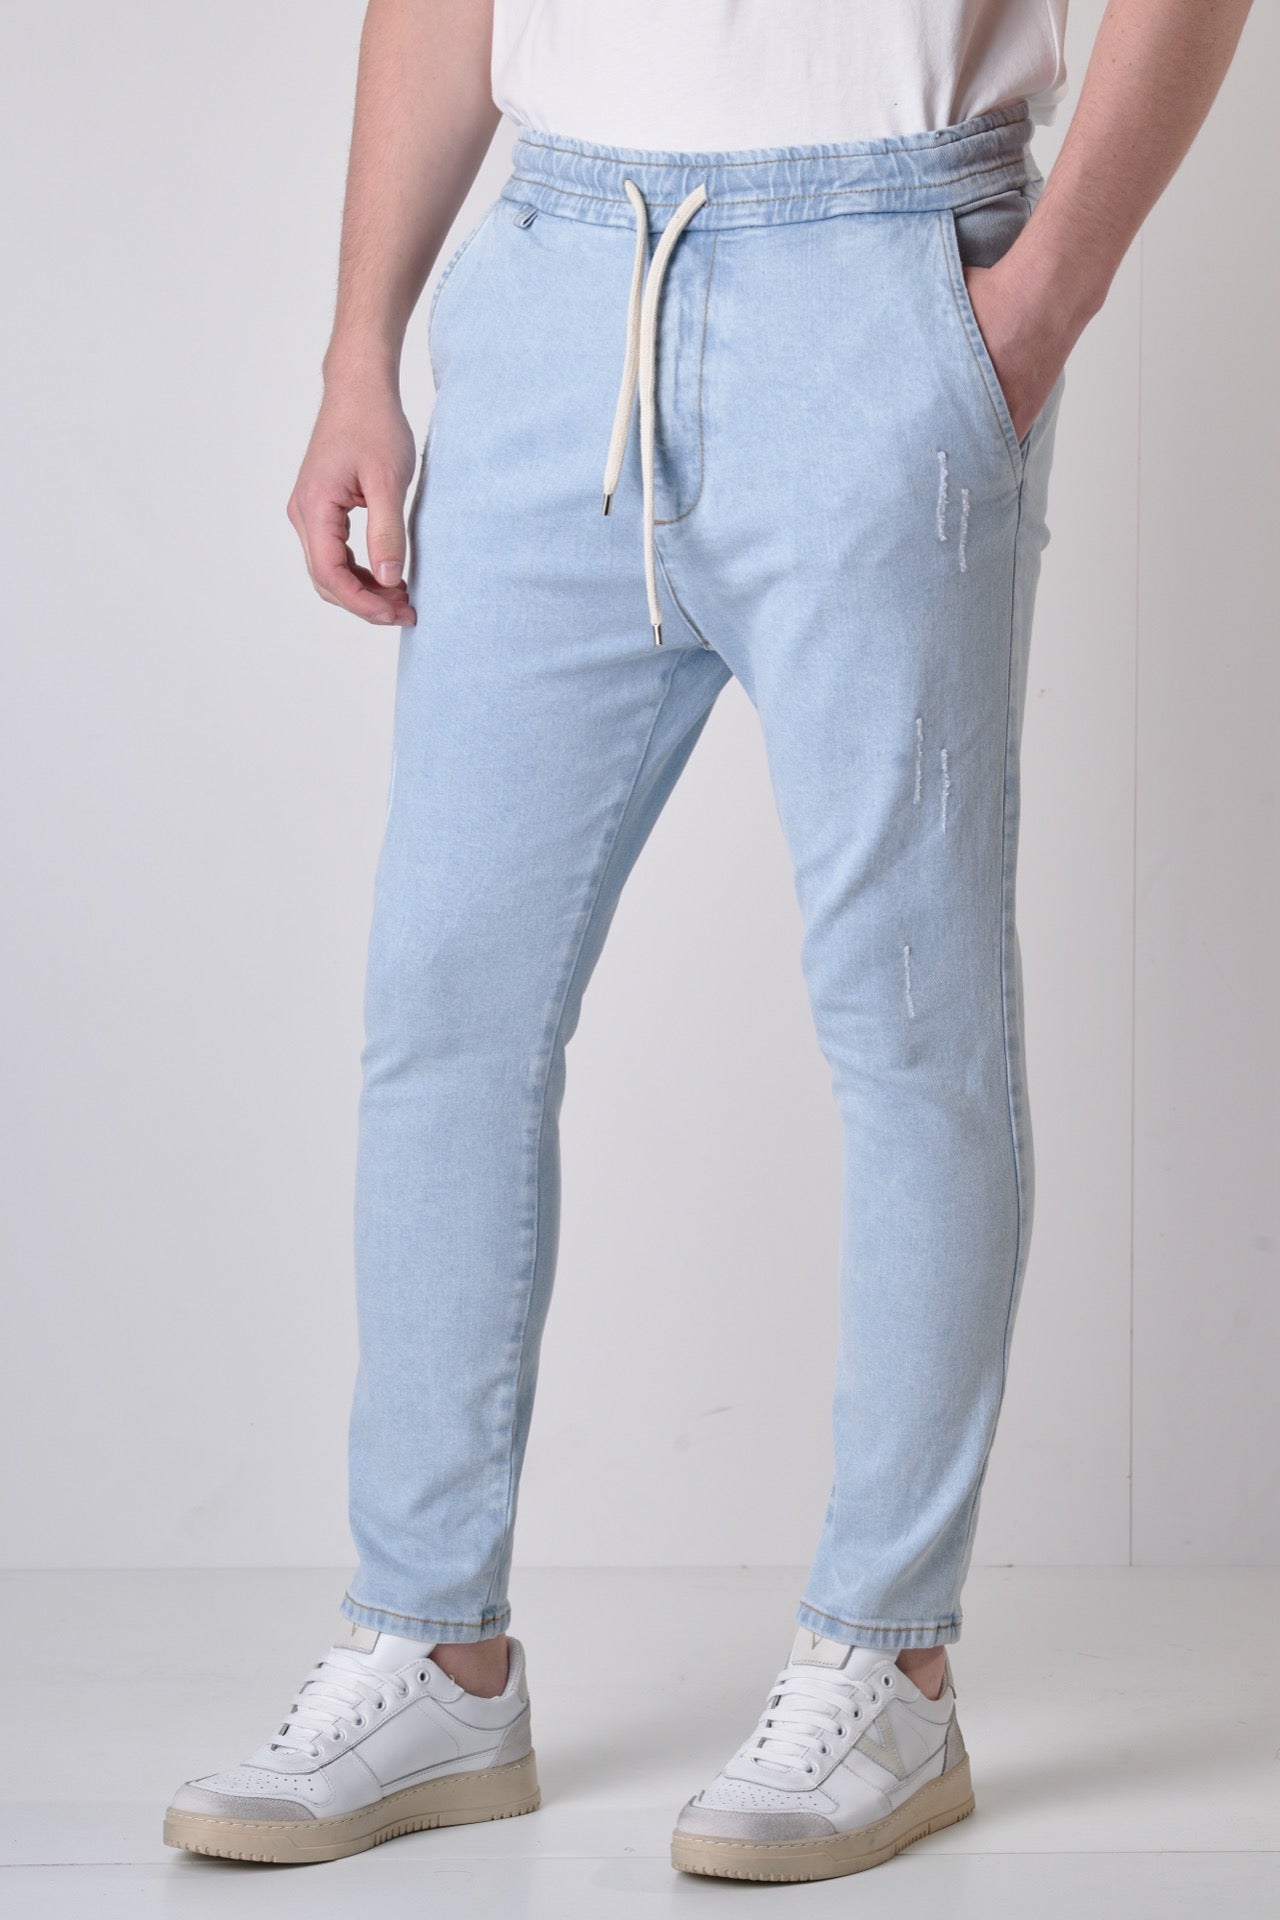 ALICANTE - Pantalone Drill Azzurro Chiaro con elastico